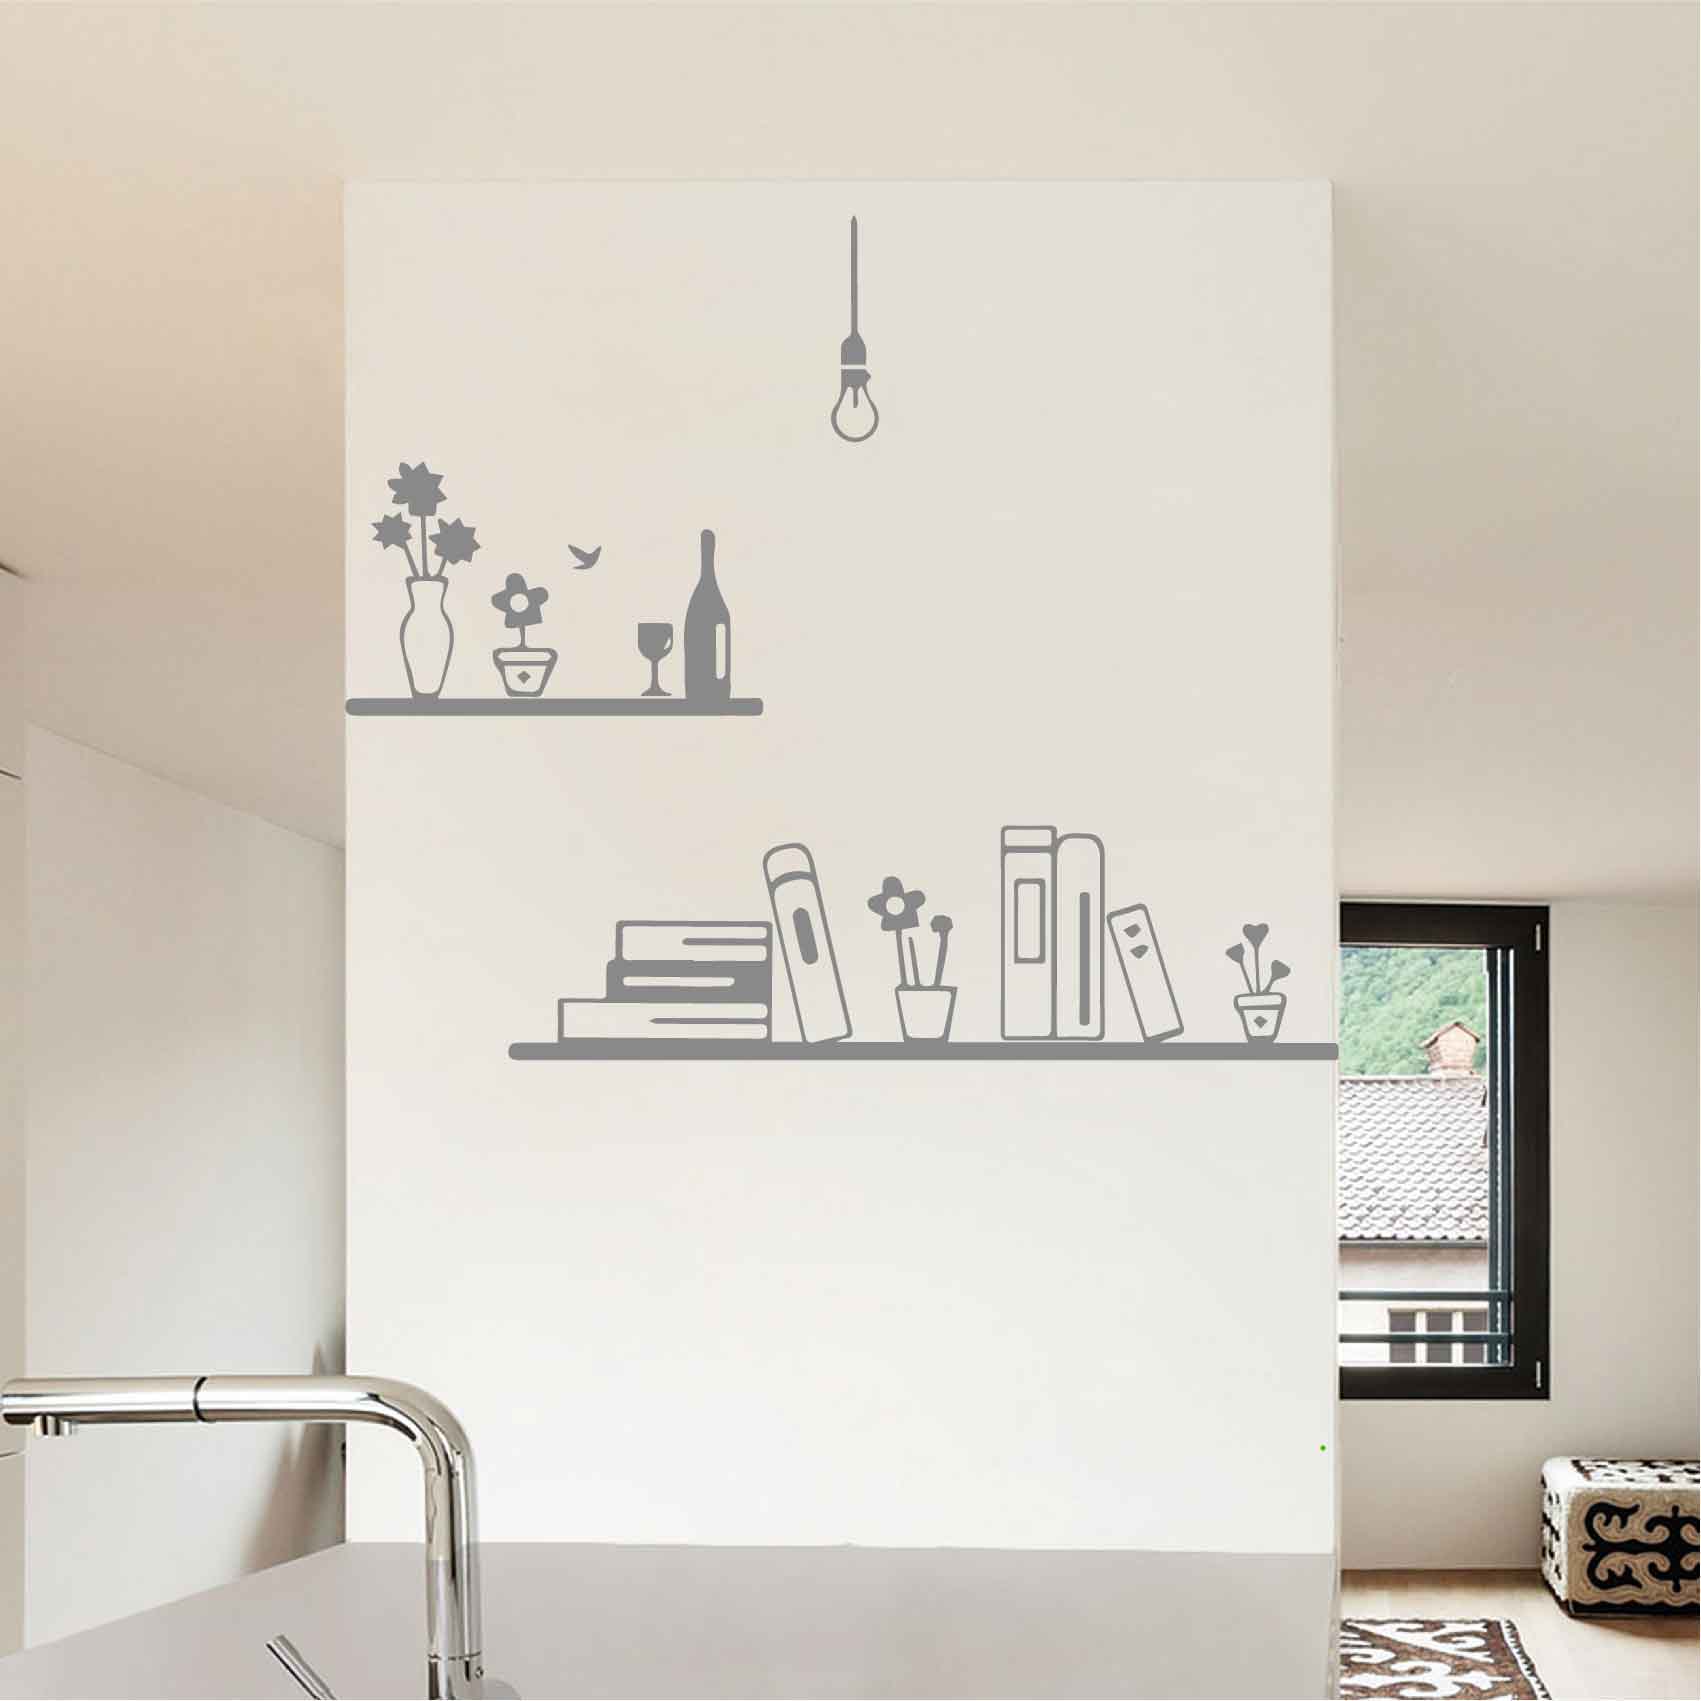 stickers-etageres-ref1etagere-stickers-muraux-autocollant-deco-salon-séjour-sticker-mural-design-art-chambre-cuisine